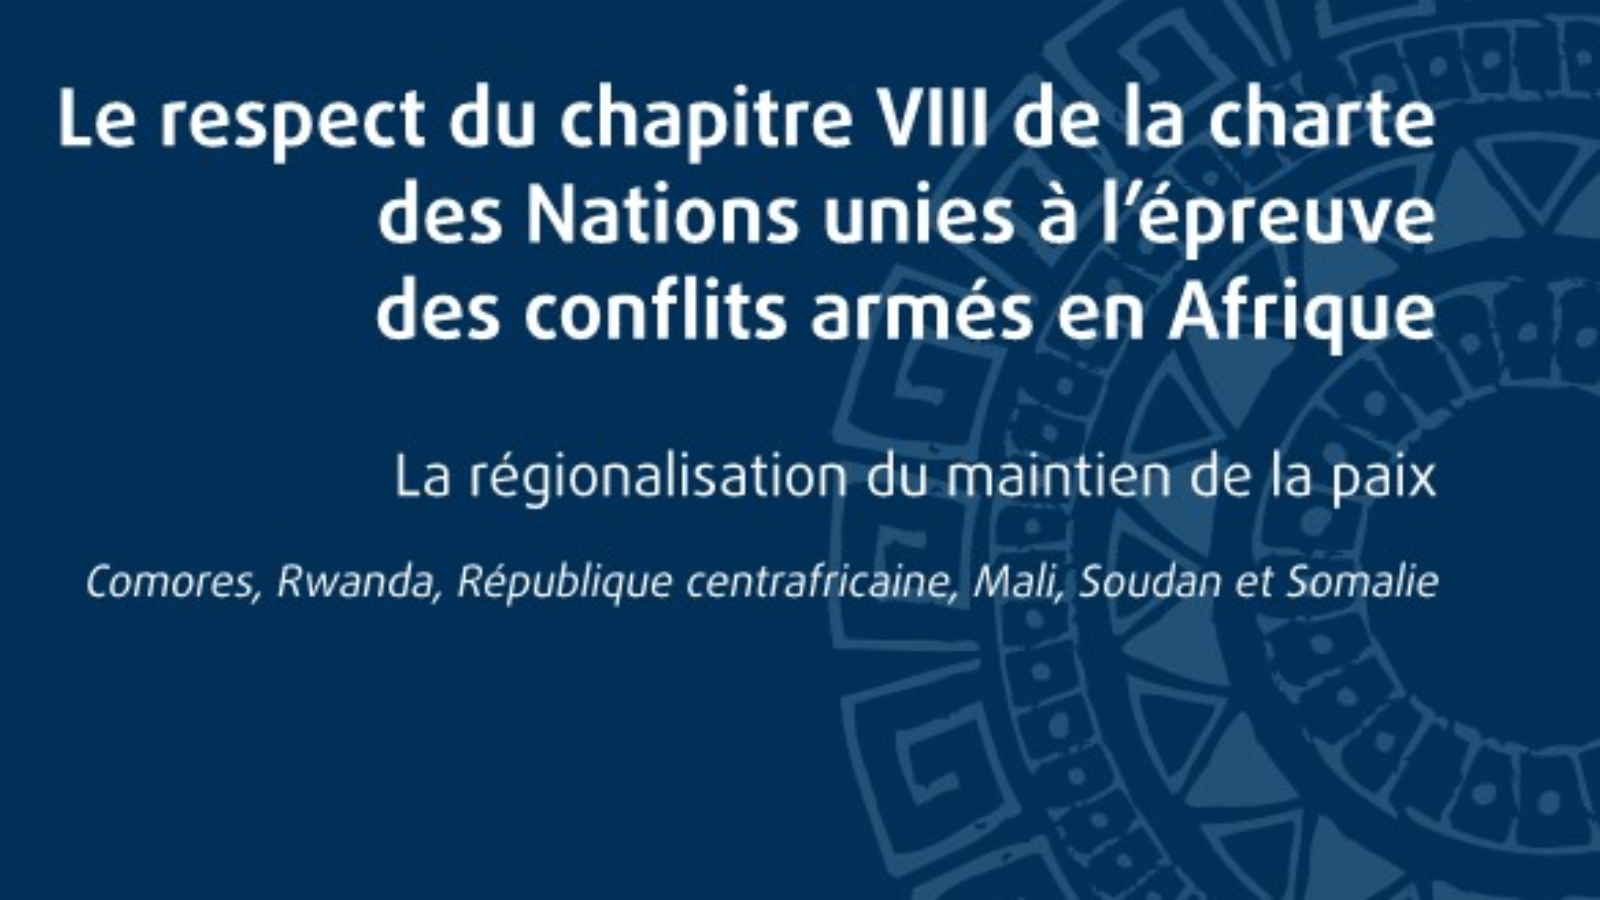 Le respect du chapitre VIII de la charte des Nations Unies à l'épreuve des conflits armés en Afrique